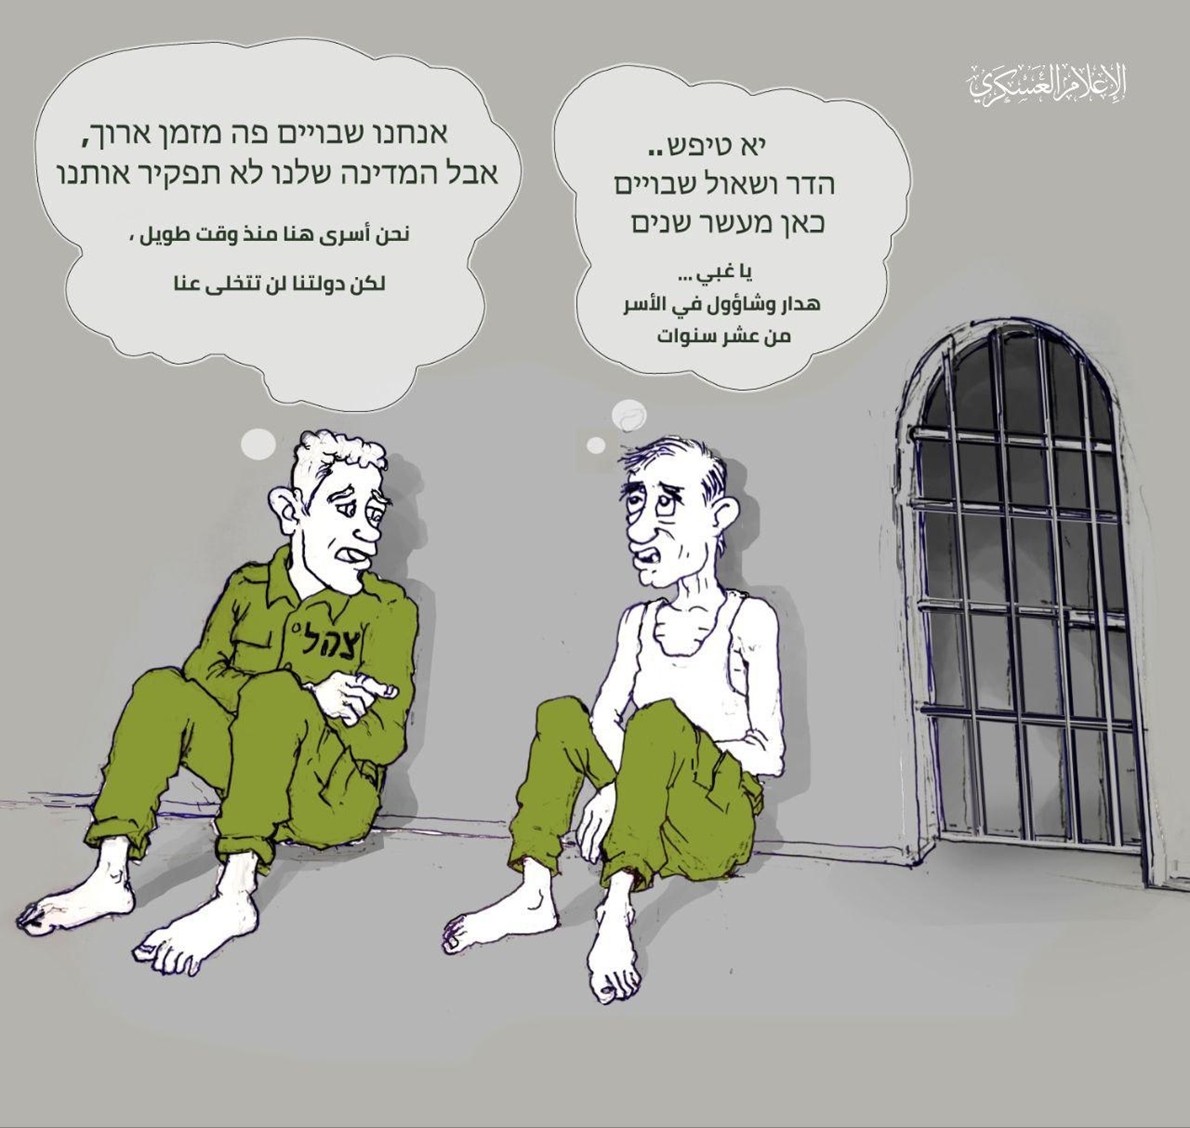 صورة كاريكاتورية لأسيرين من جيش الاحتلال.jpg